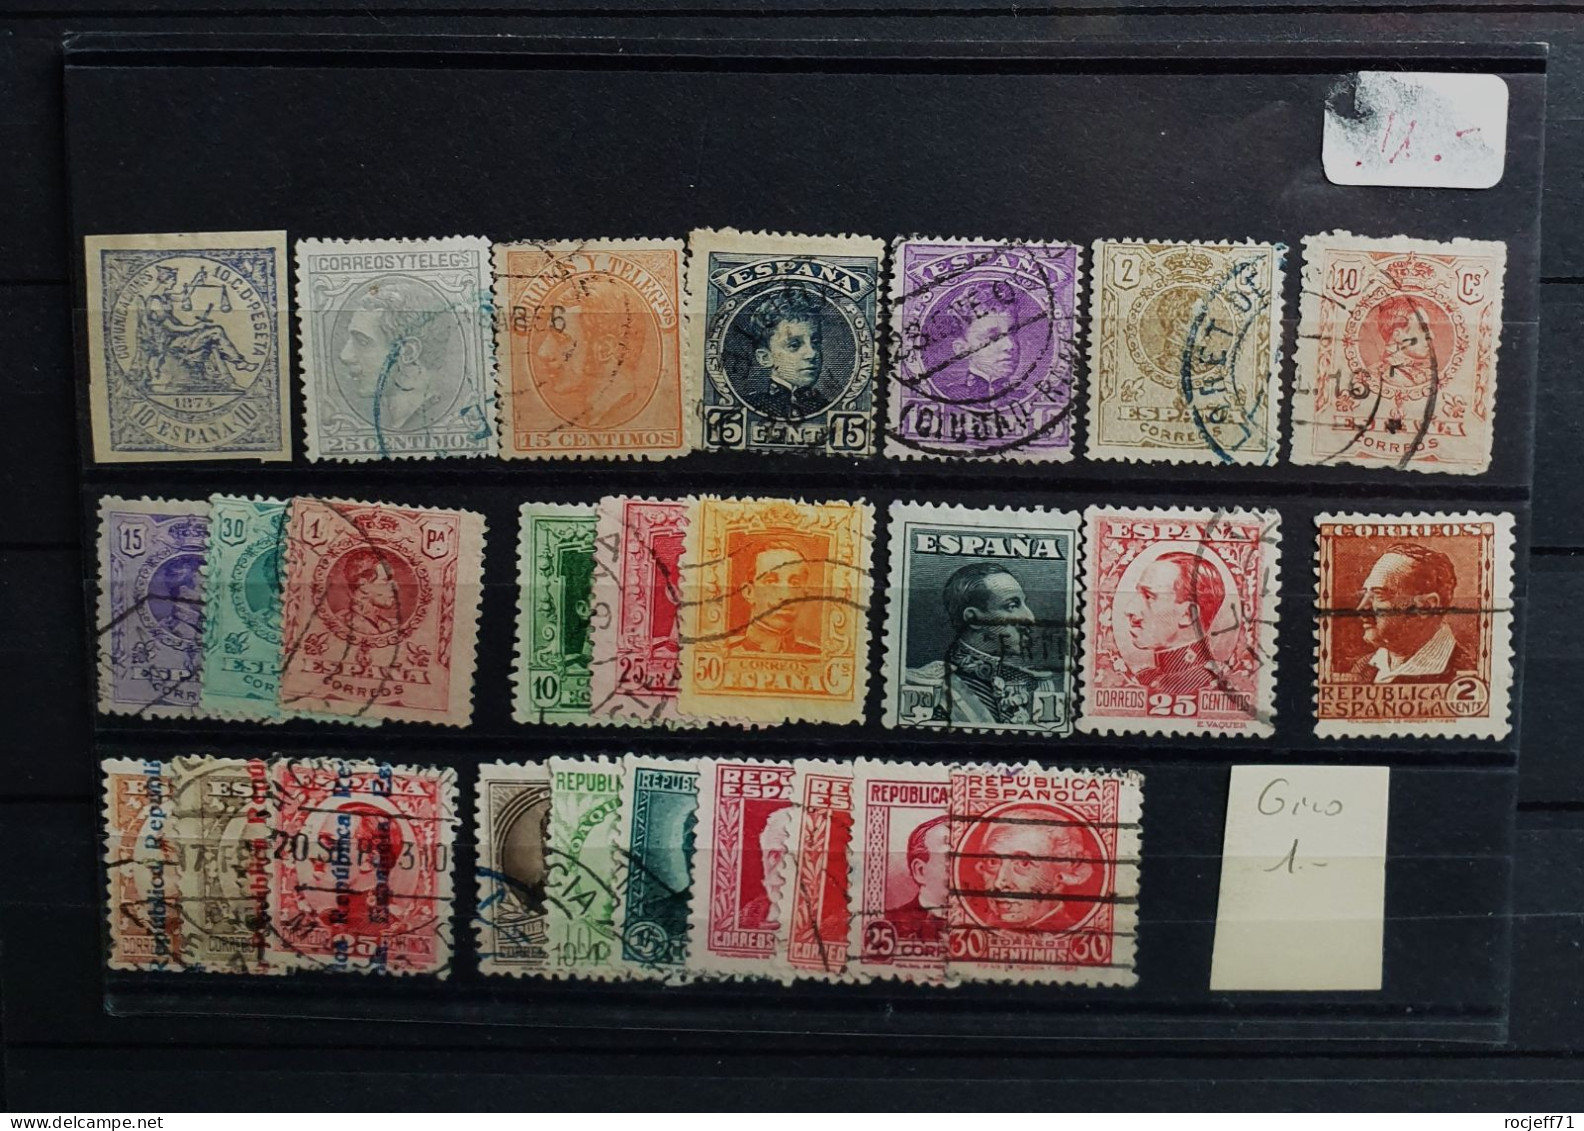 05 - 24 - Gino - Espagne - Spain -  Lot De Vieux Timbres - Old Stamps - Oblitérés